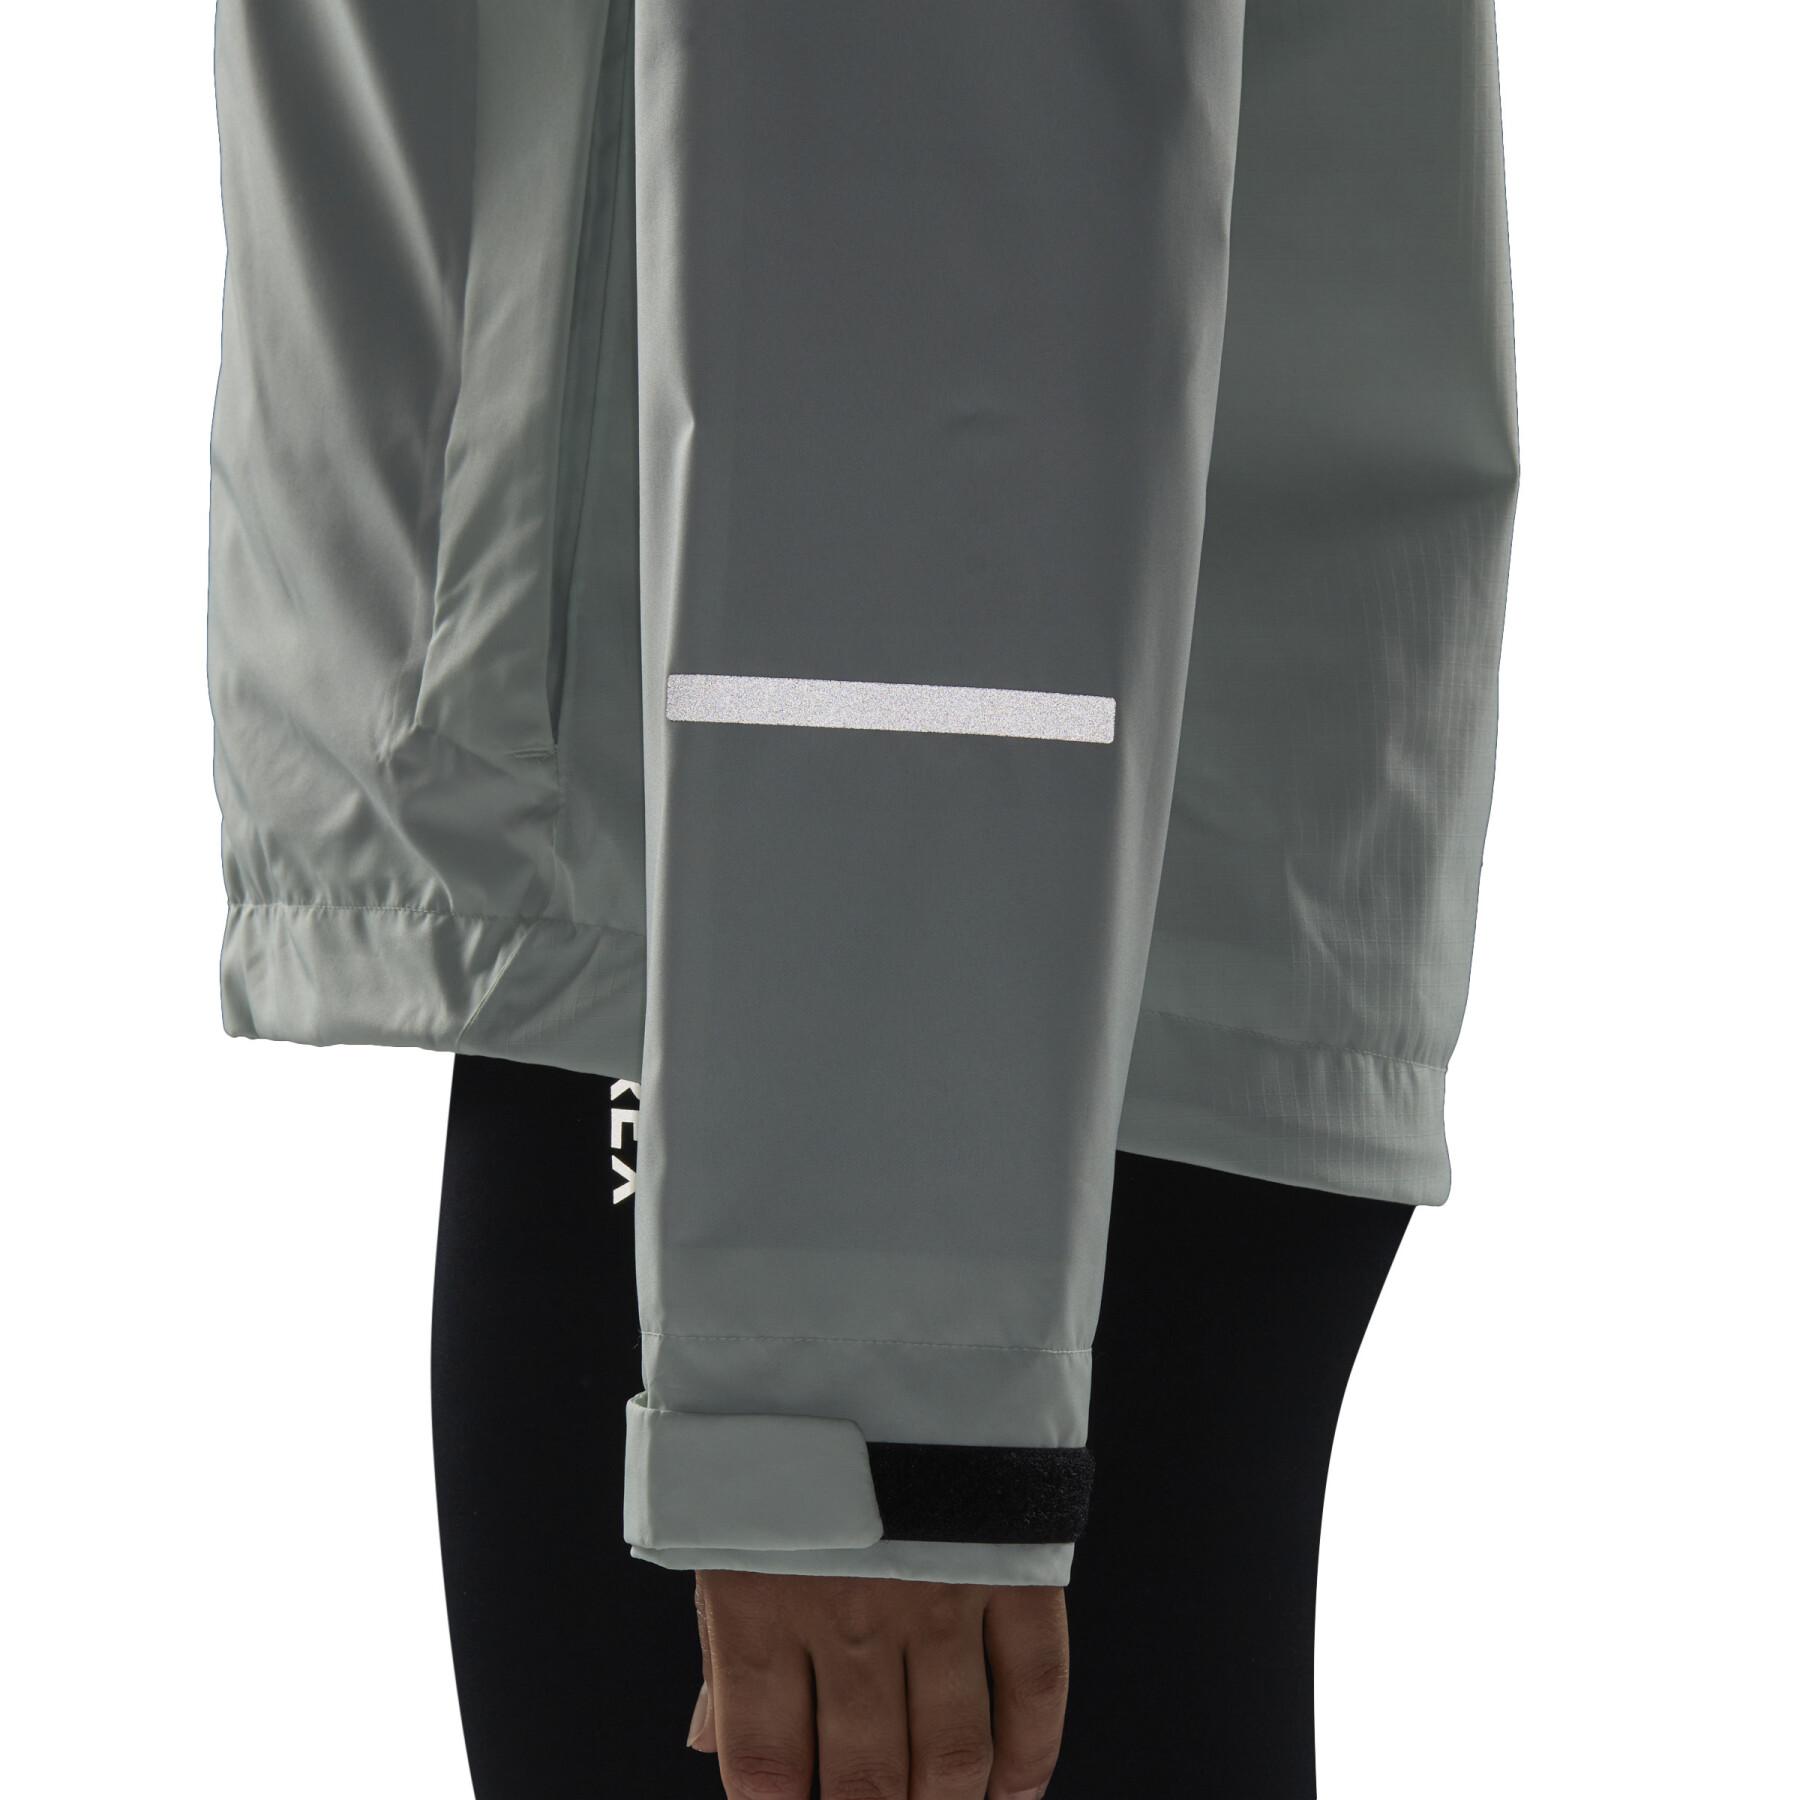 Women's 2-layer waterproof jacket adidas Terrex Multi Rain.Rdy 2